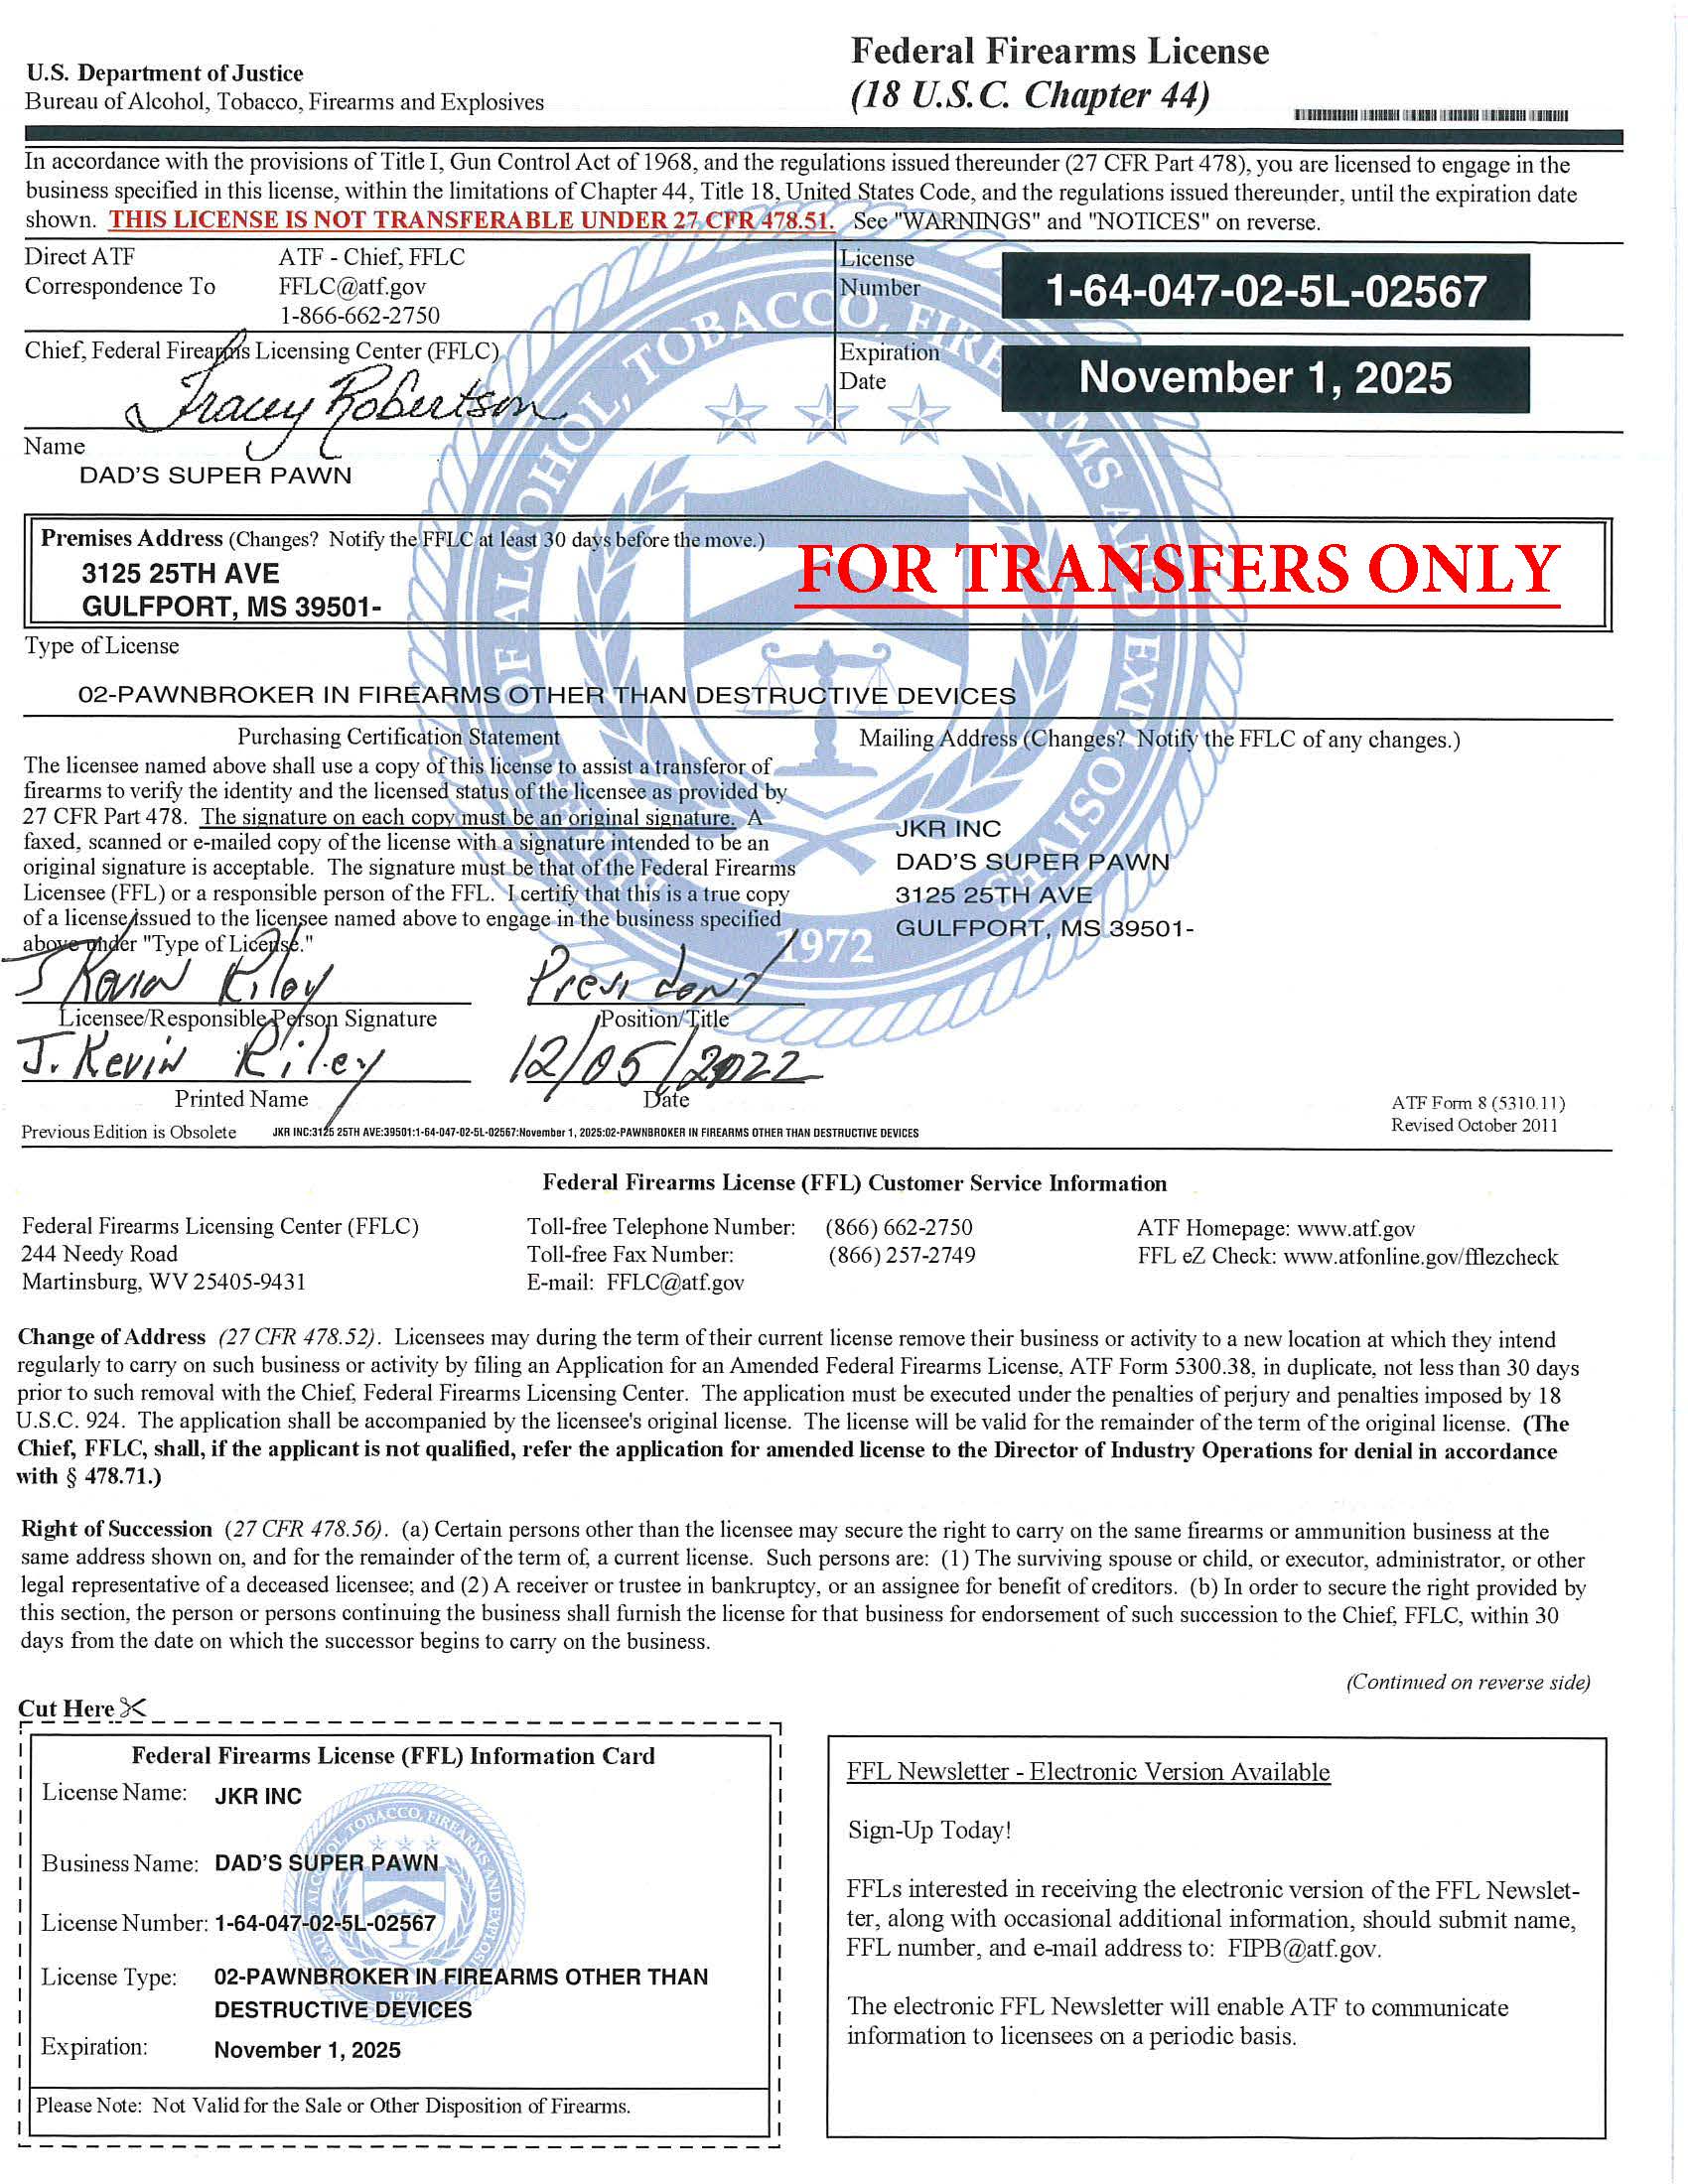 FFL Transfer Only